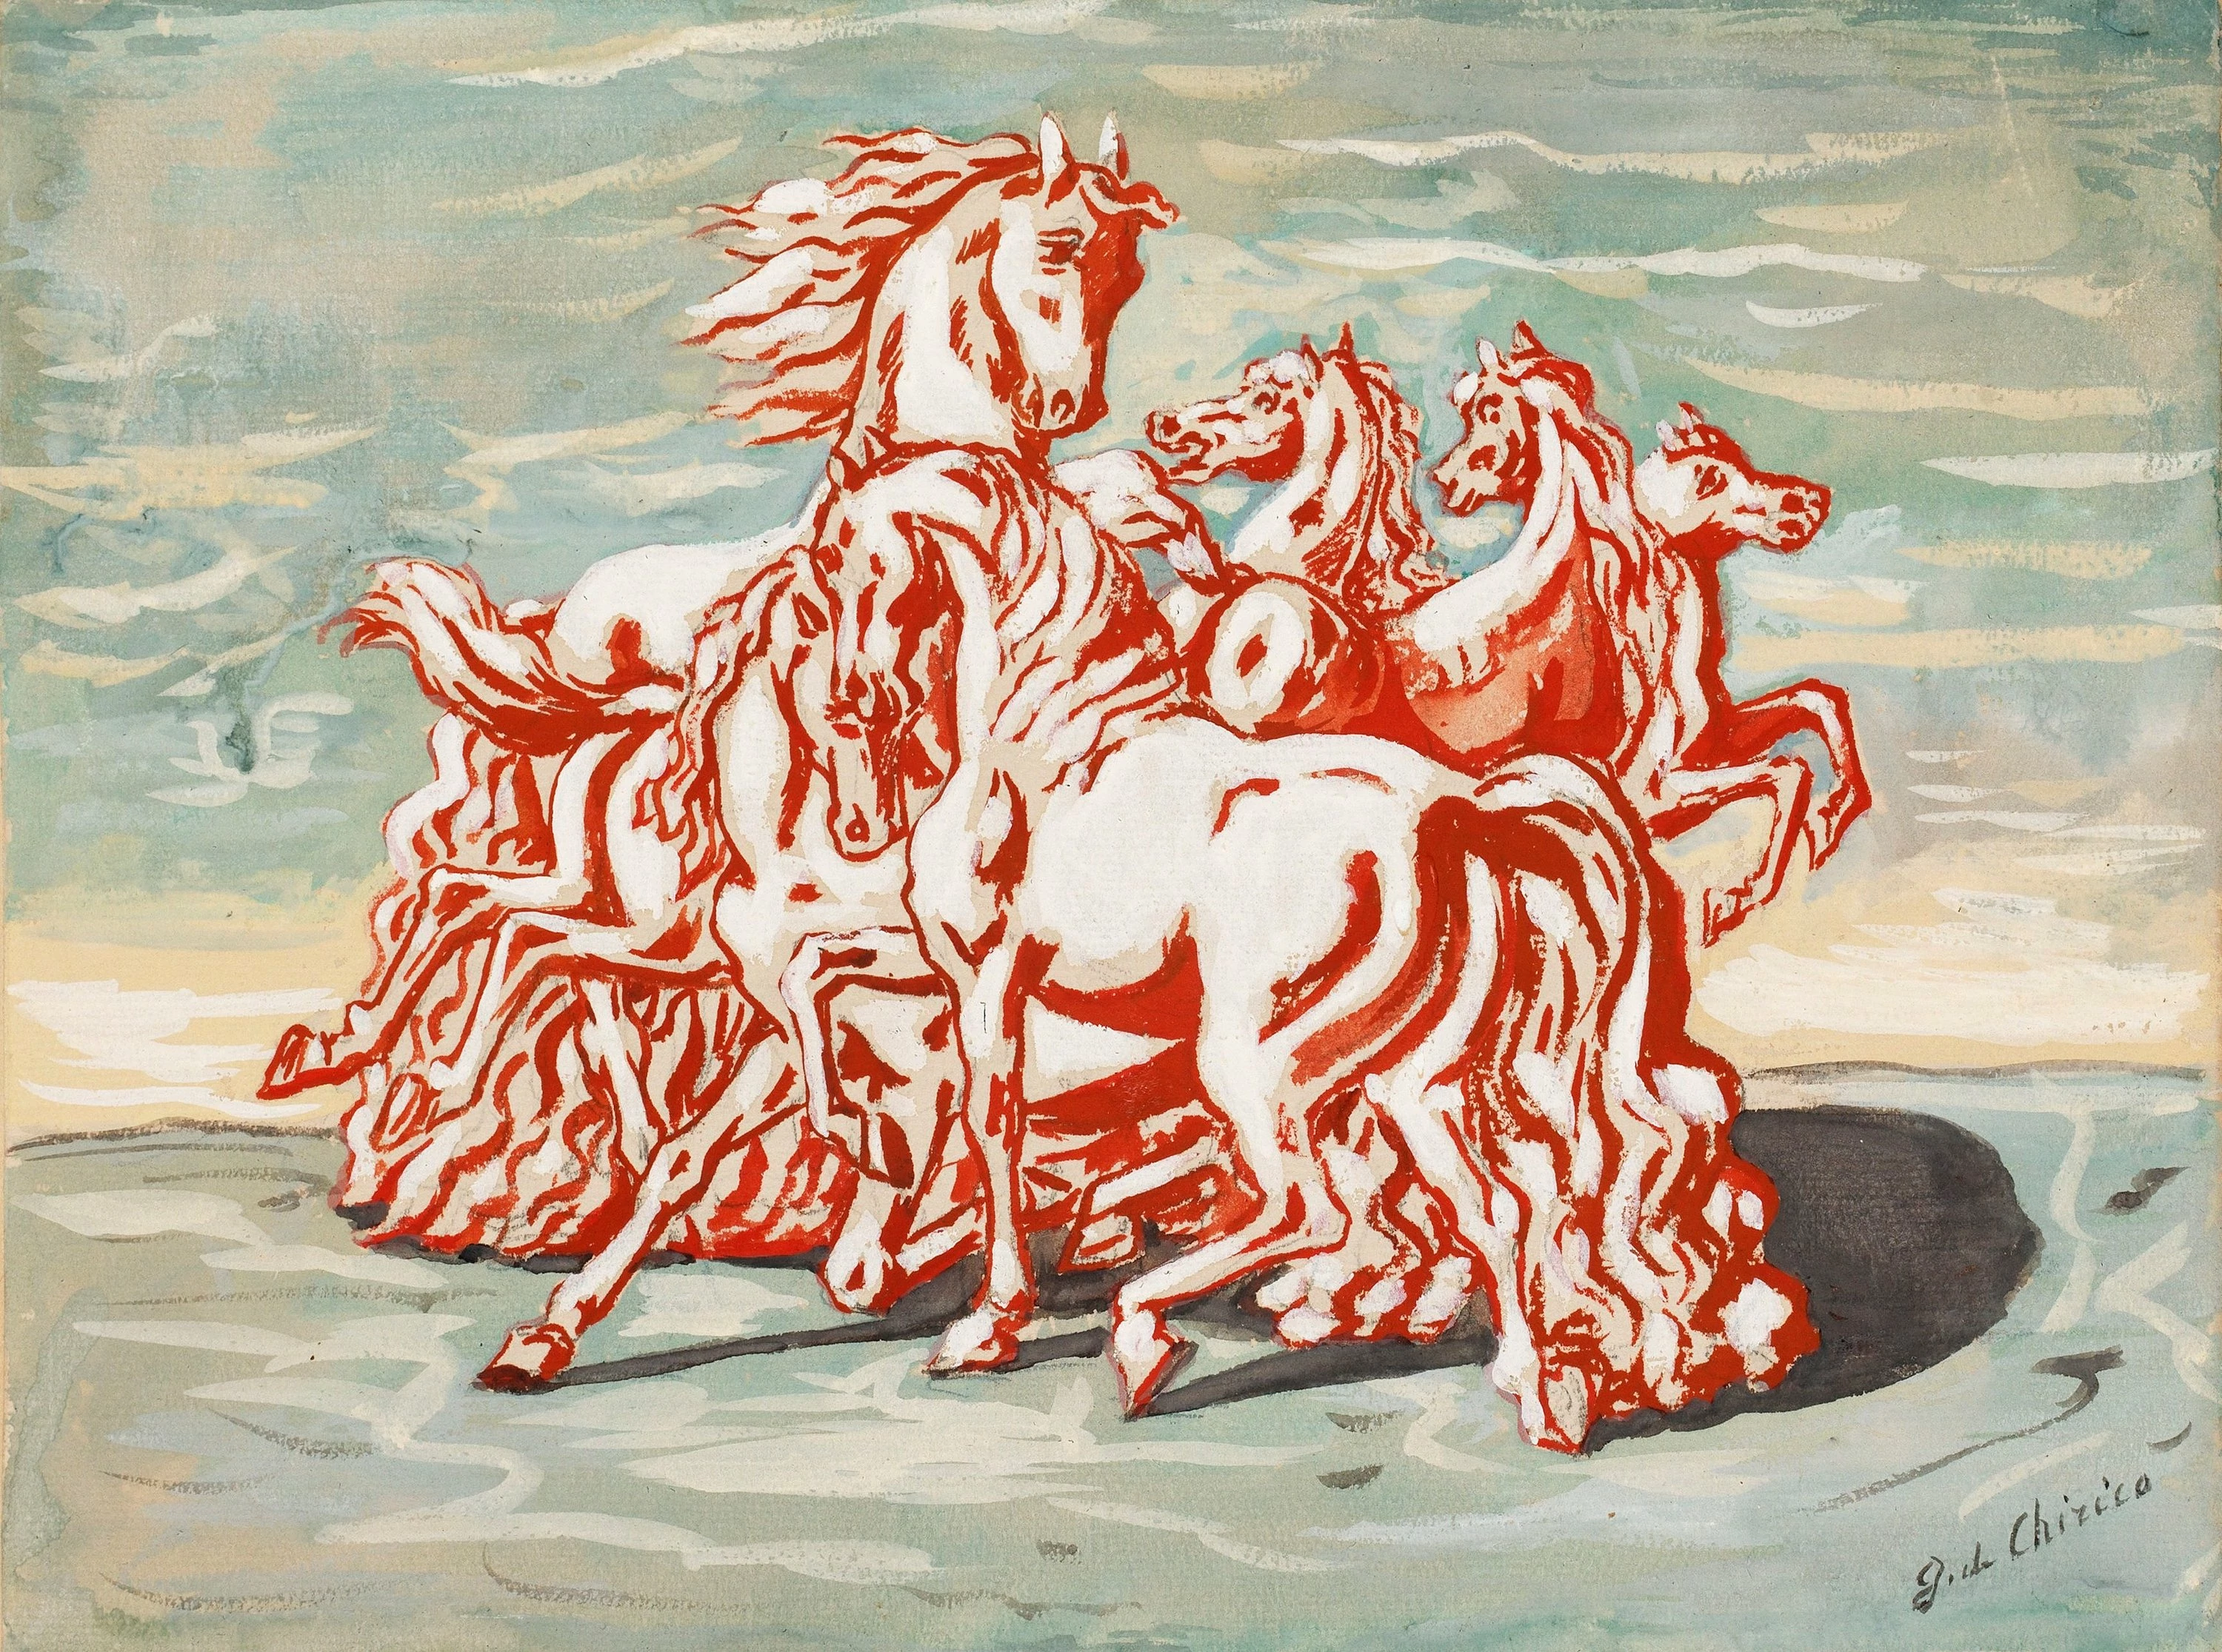 Cavalli, Giorgio de Chirico